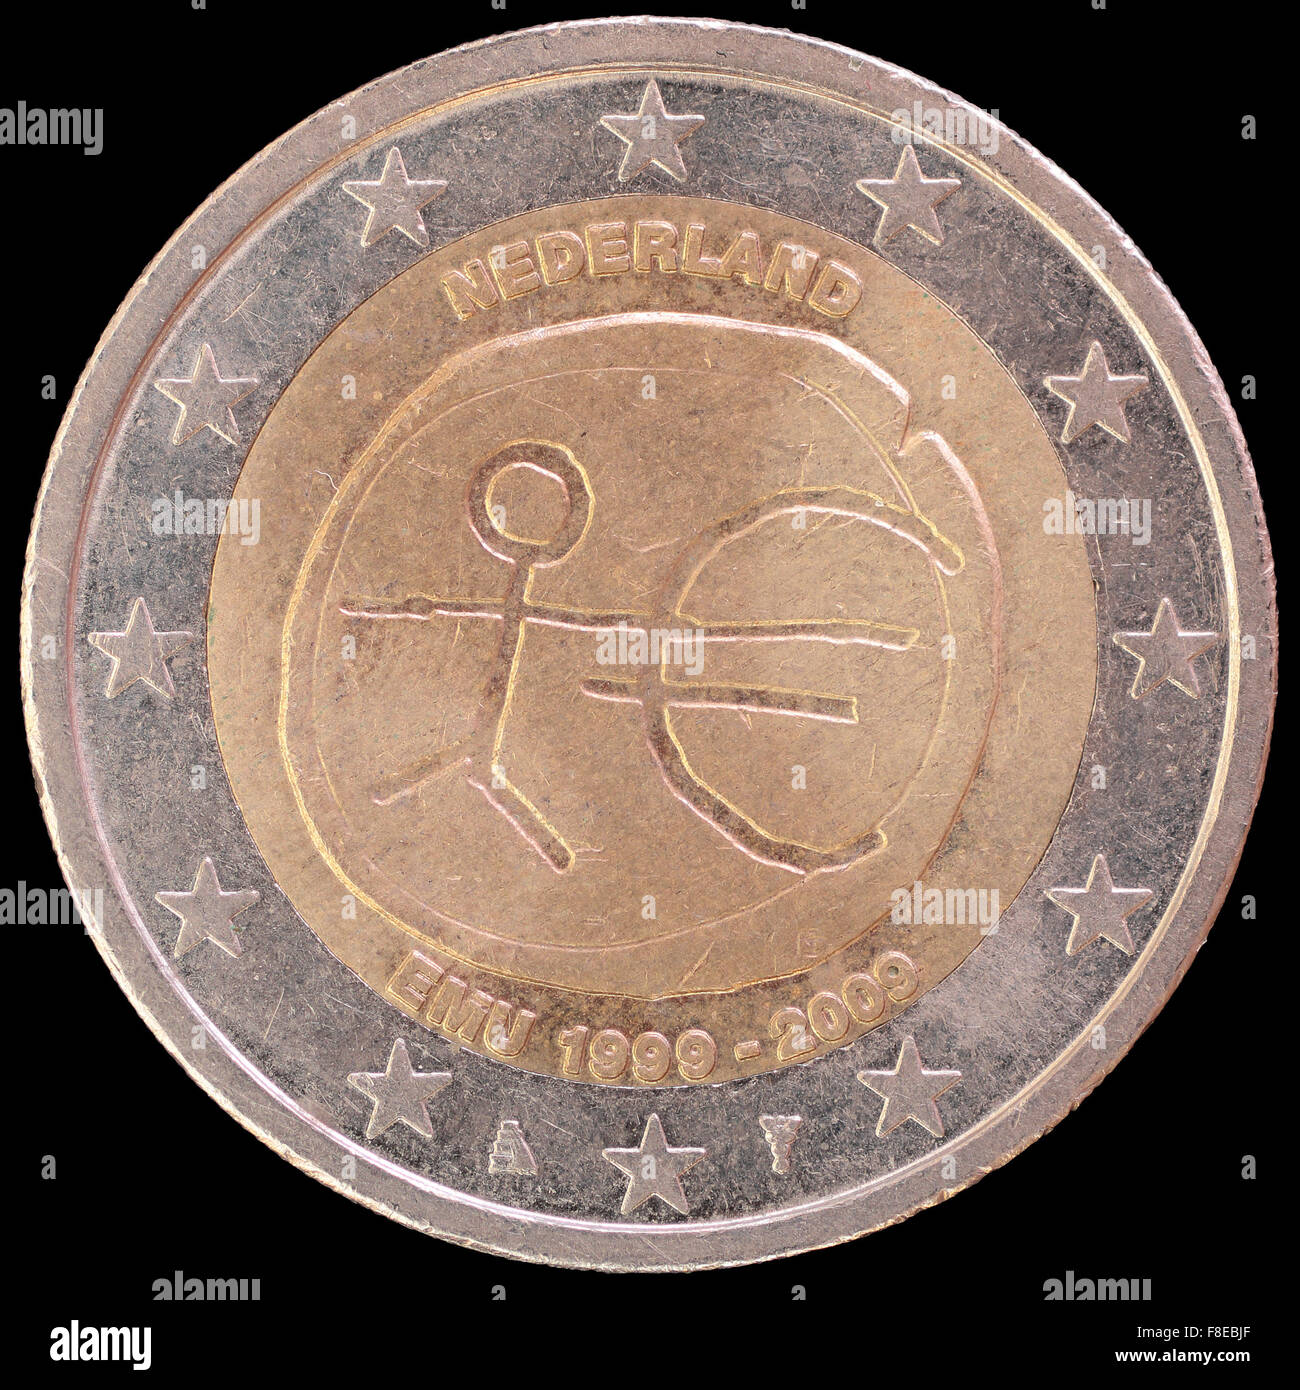 Una moneda de dos euros distribuido conmemorativas emitidas por los Países Bajos en 2009, celebrando el aniversario de unio monetaria y económica Foto de stock